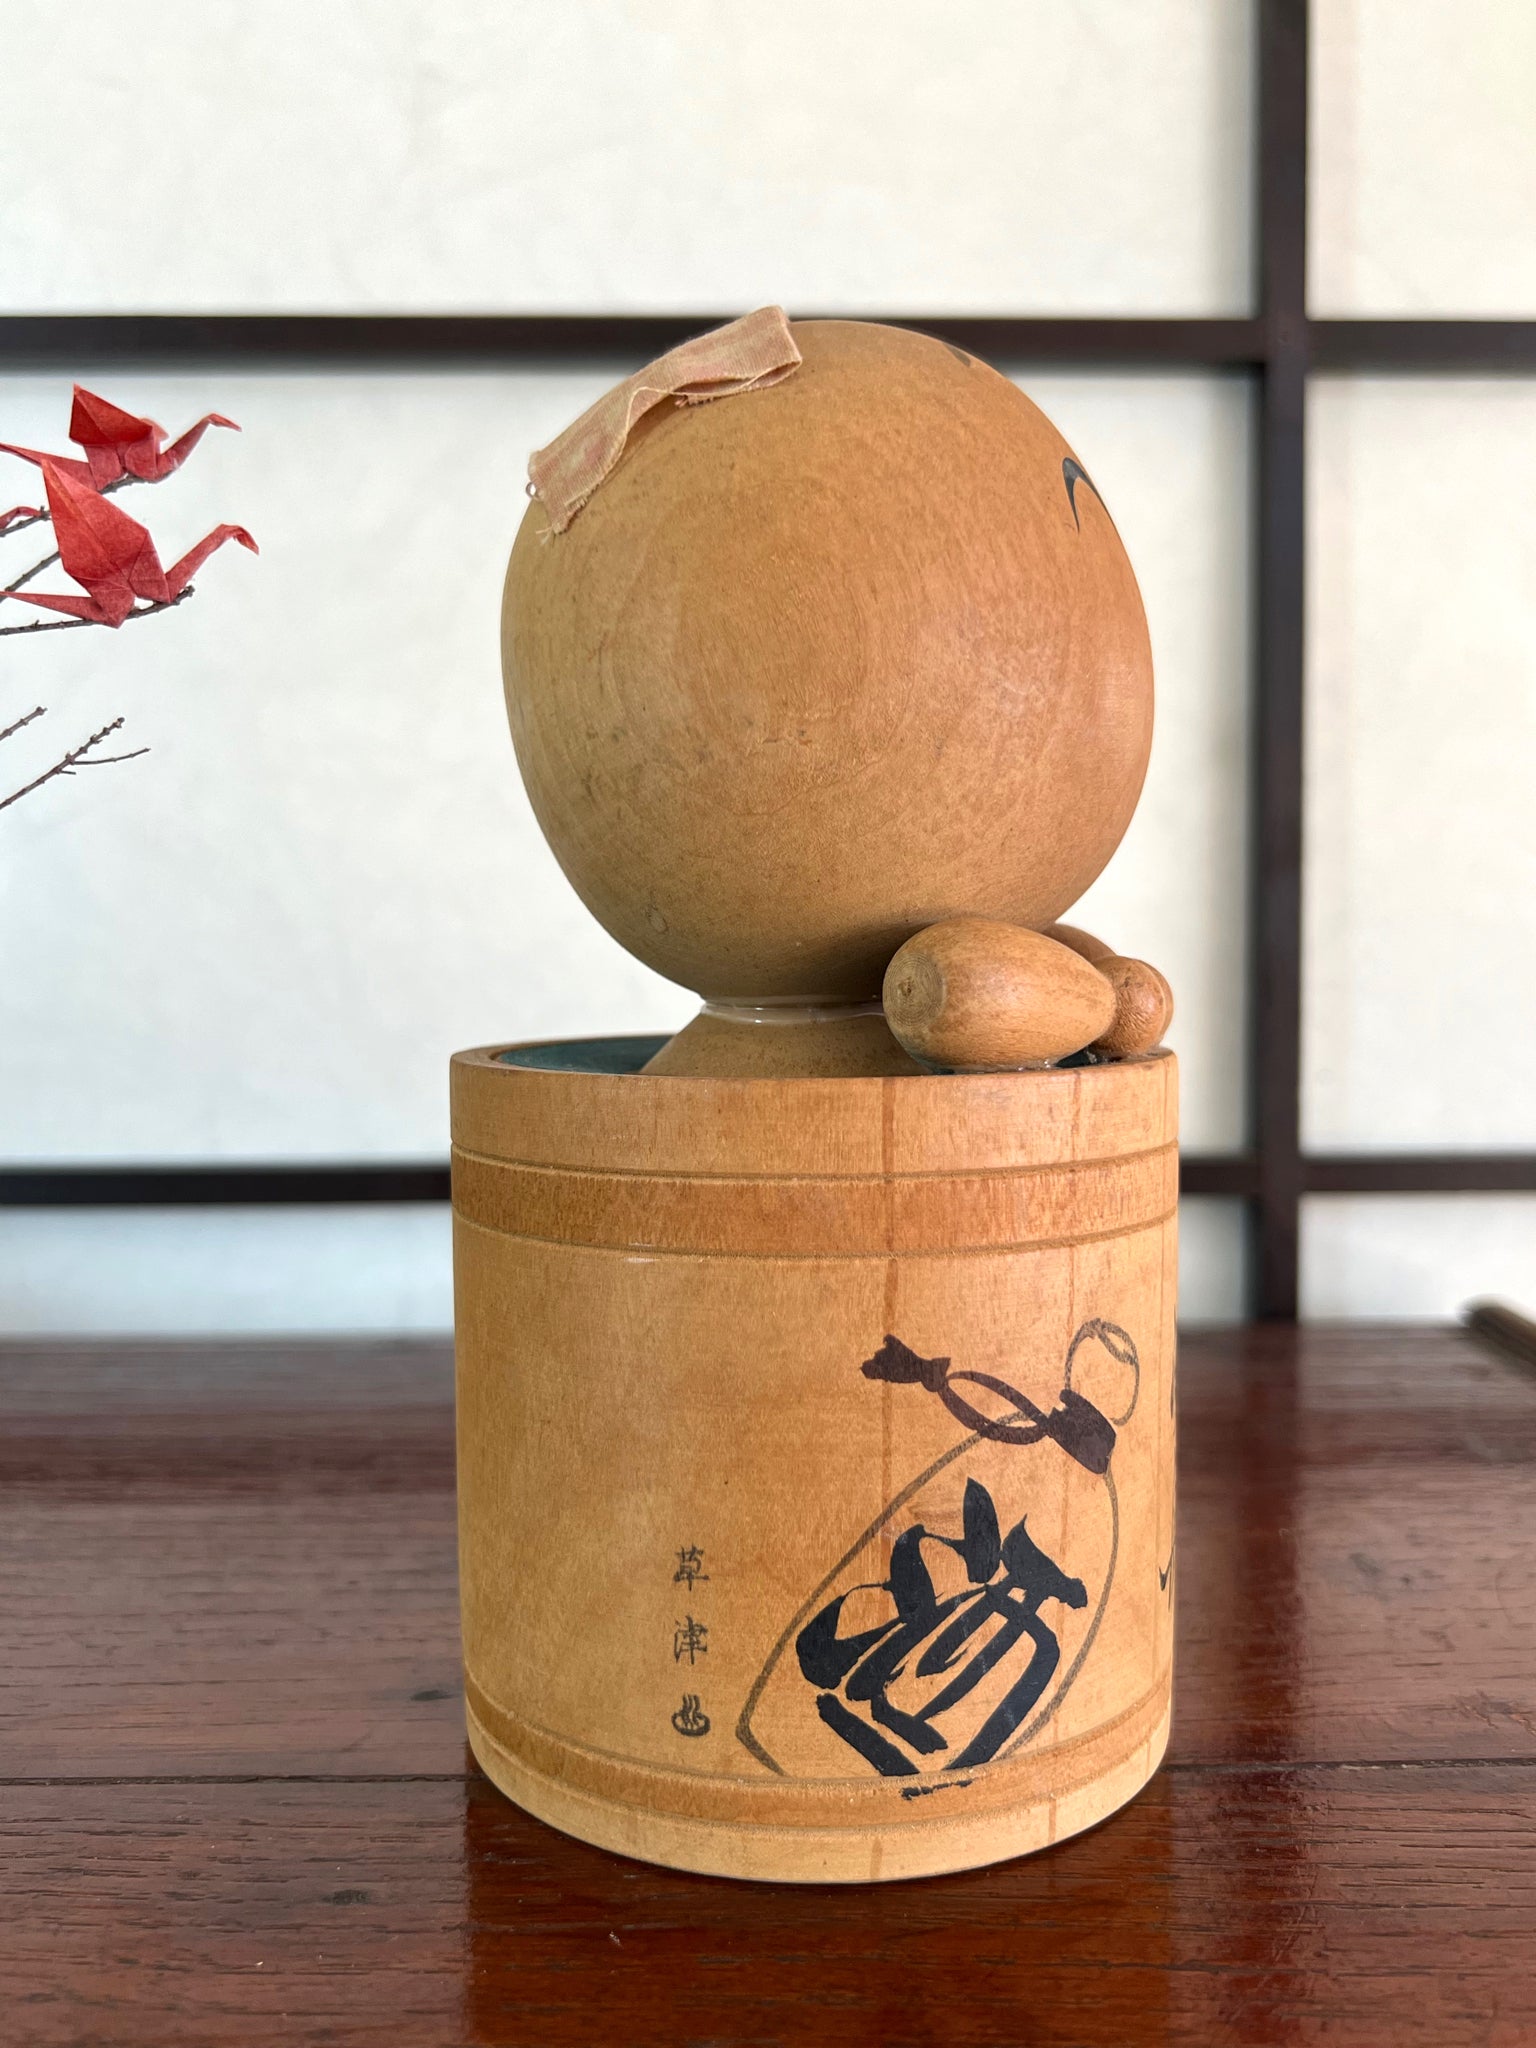 kokeshi poupée japonaise en bois dans son bain, profil droit